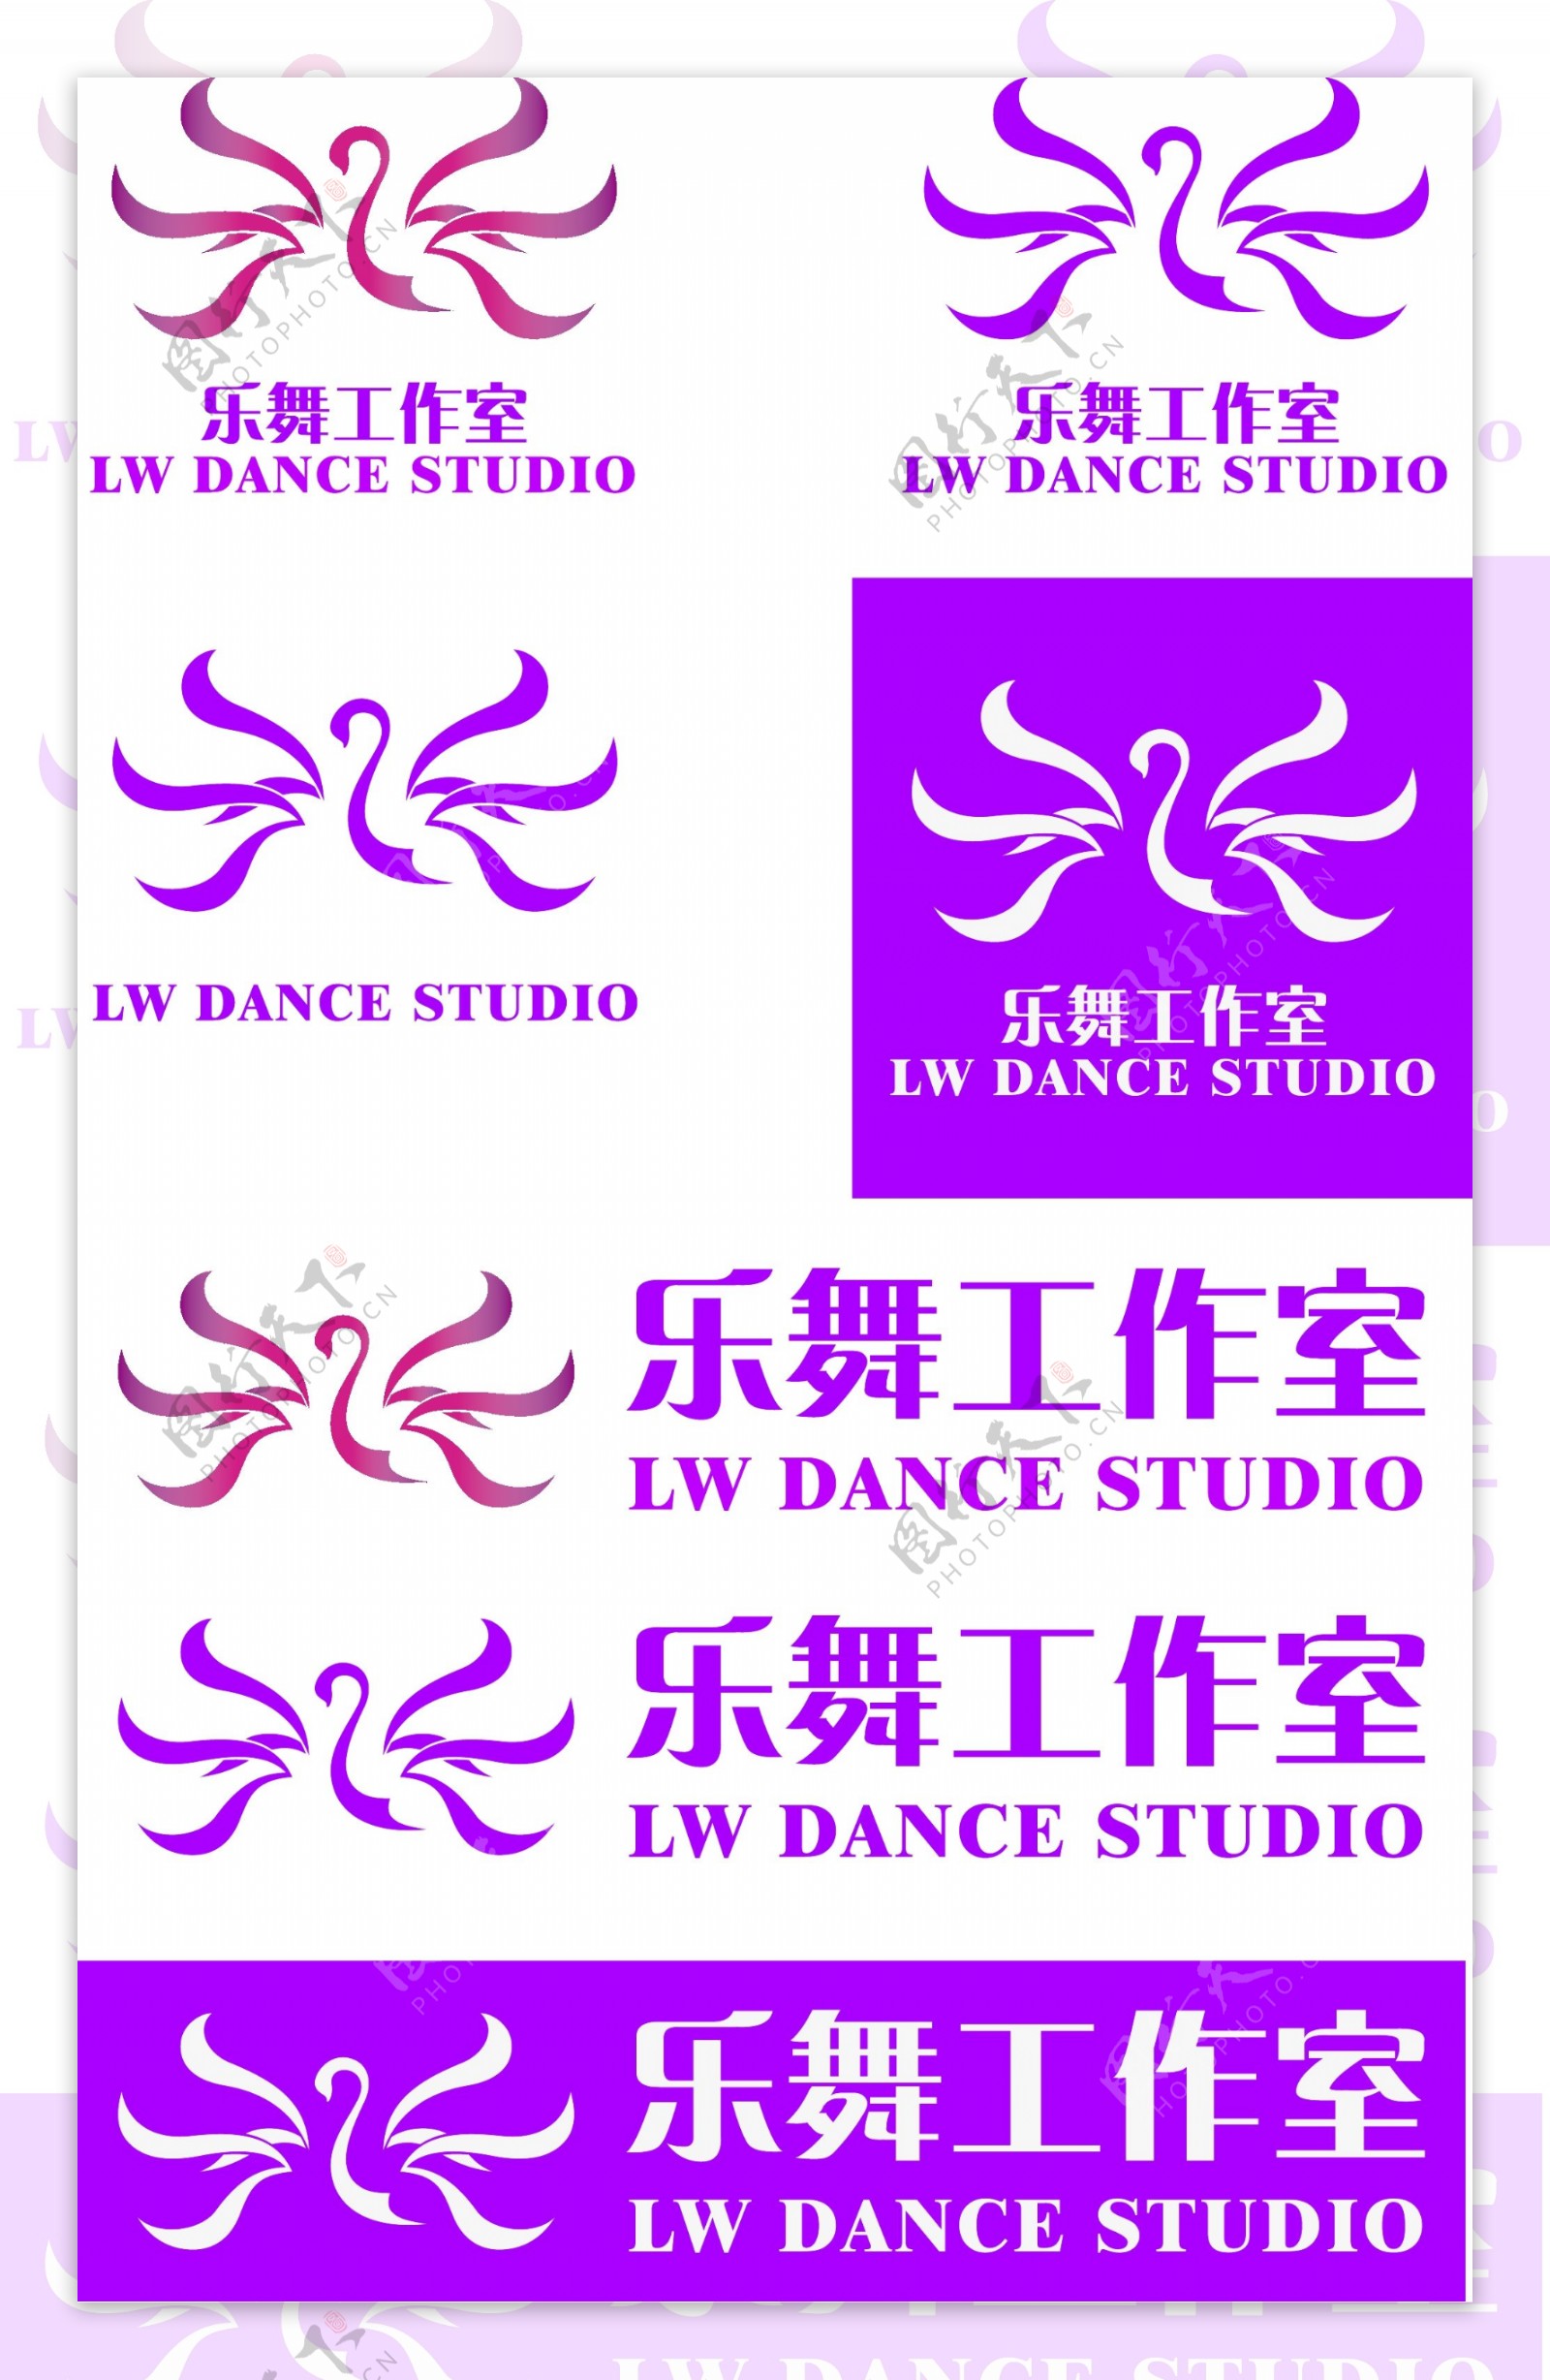 乐舞舞蹈工作室天鹅桃红色logo设计